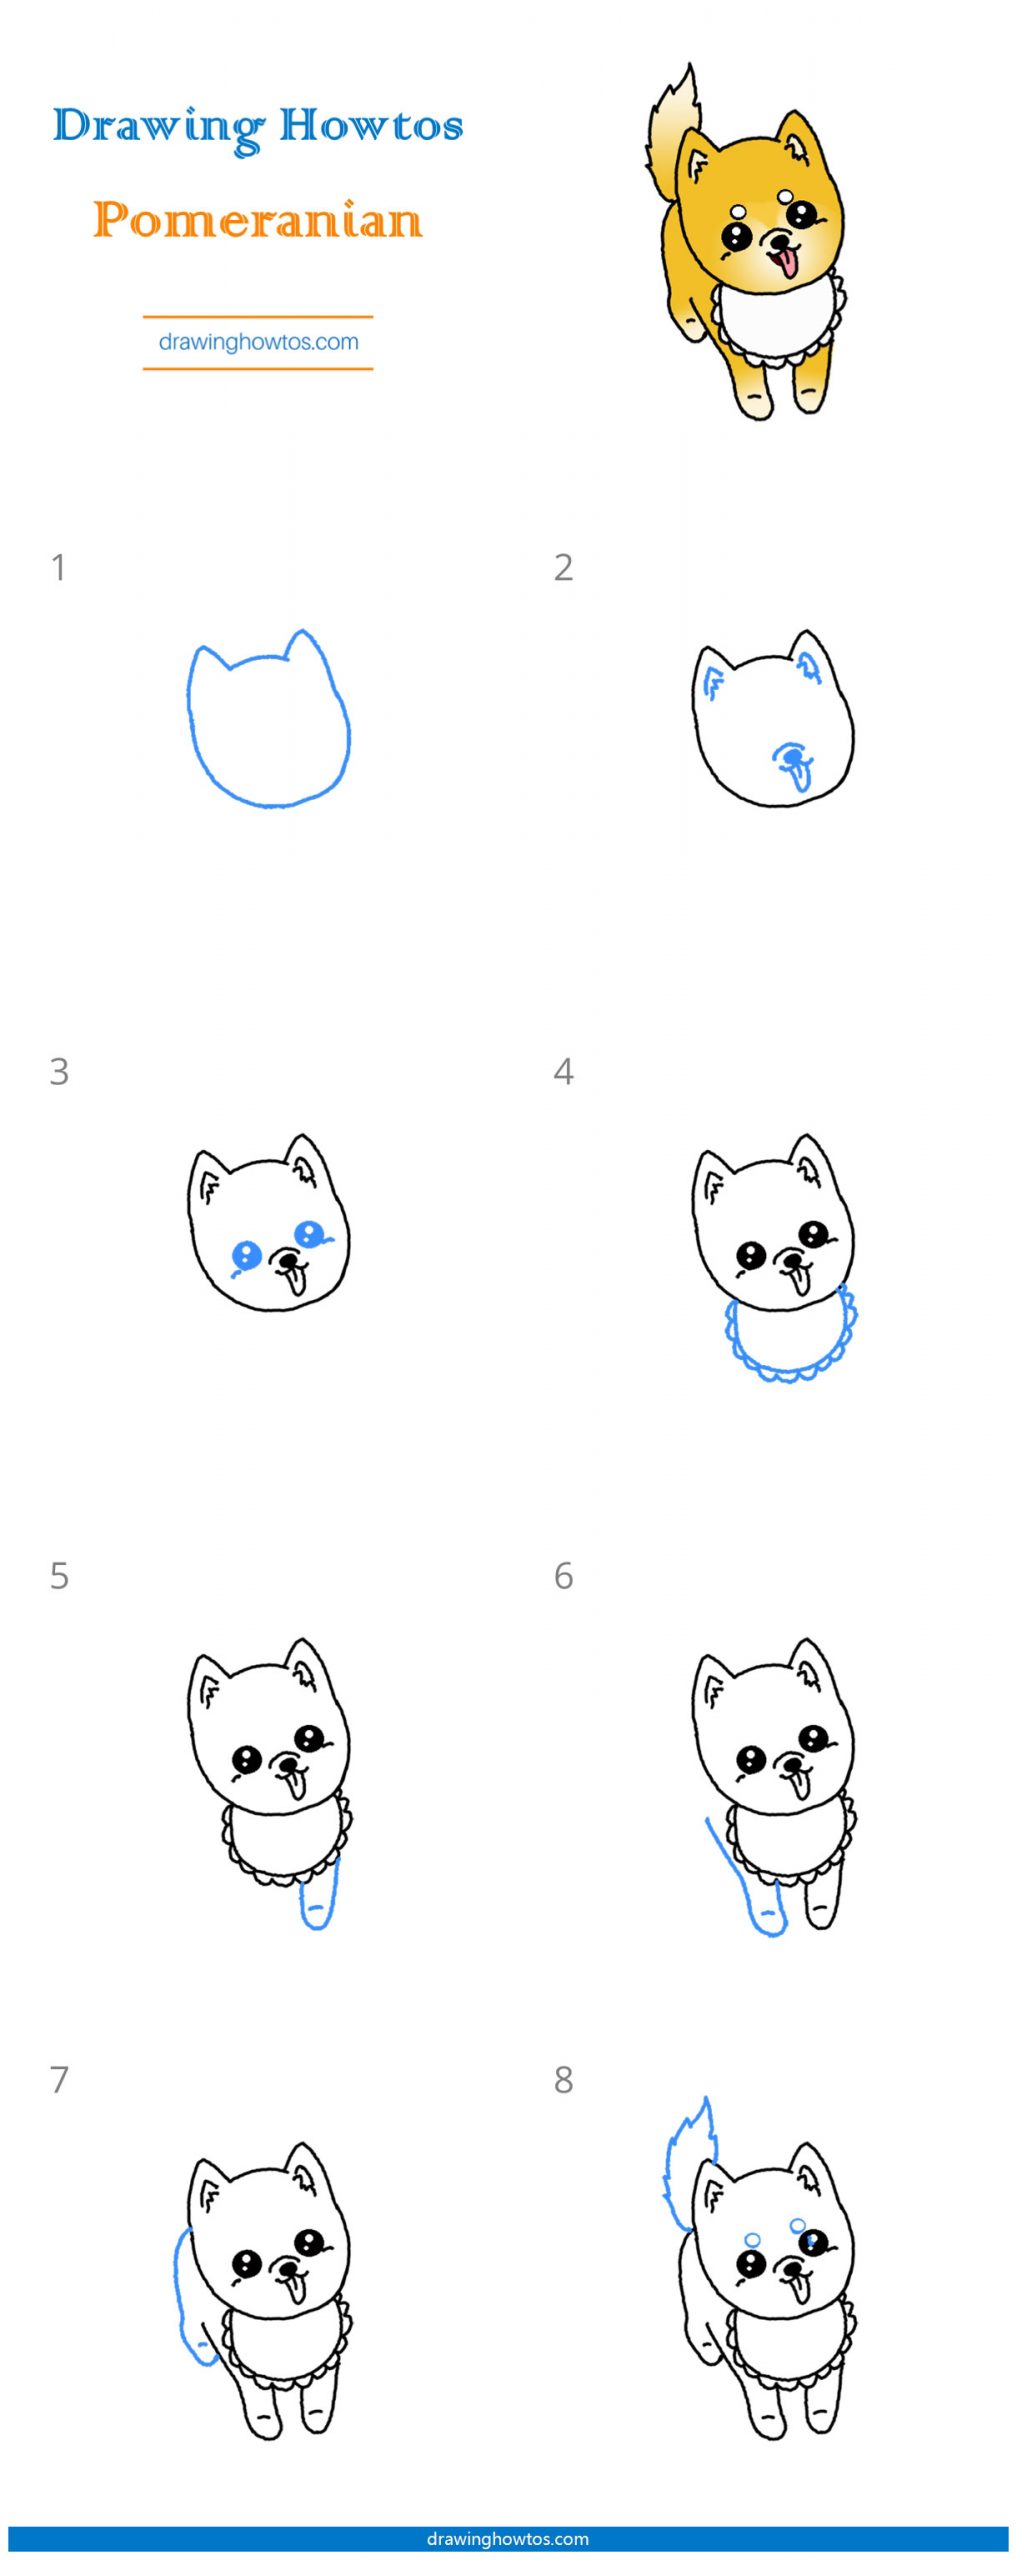 How to Draw a Pomeranian Step by Step